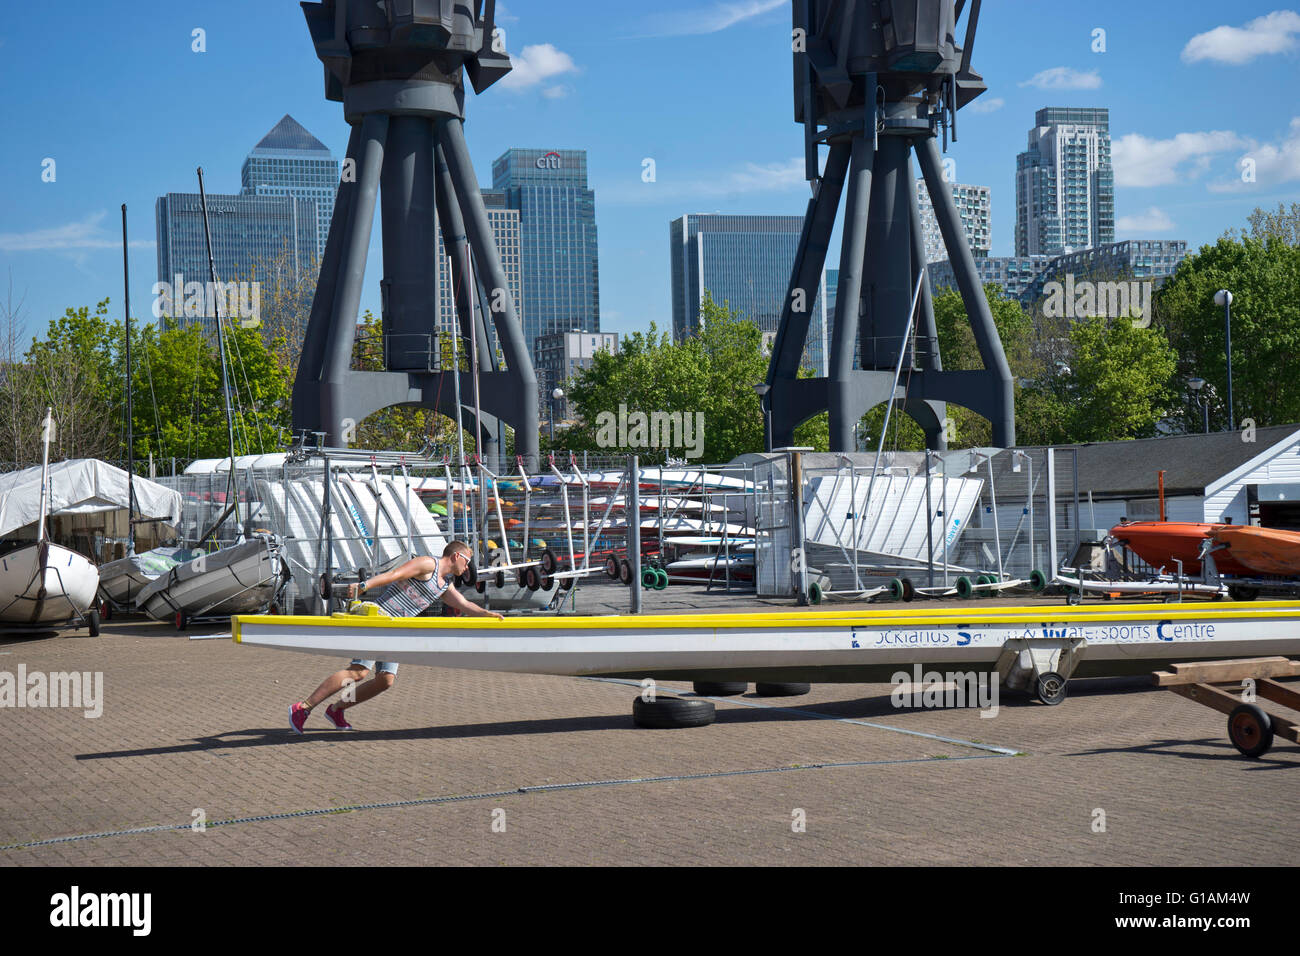 Uomo che ripara barca a vela Docklands e centro di sport acquatici nelle vicinanze del Canary Wharf di Londra, Regno Unito Foto Stock